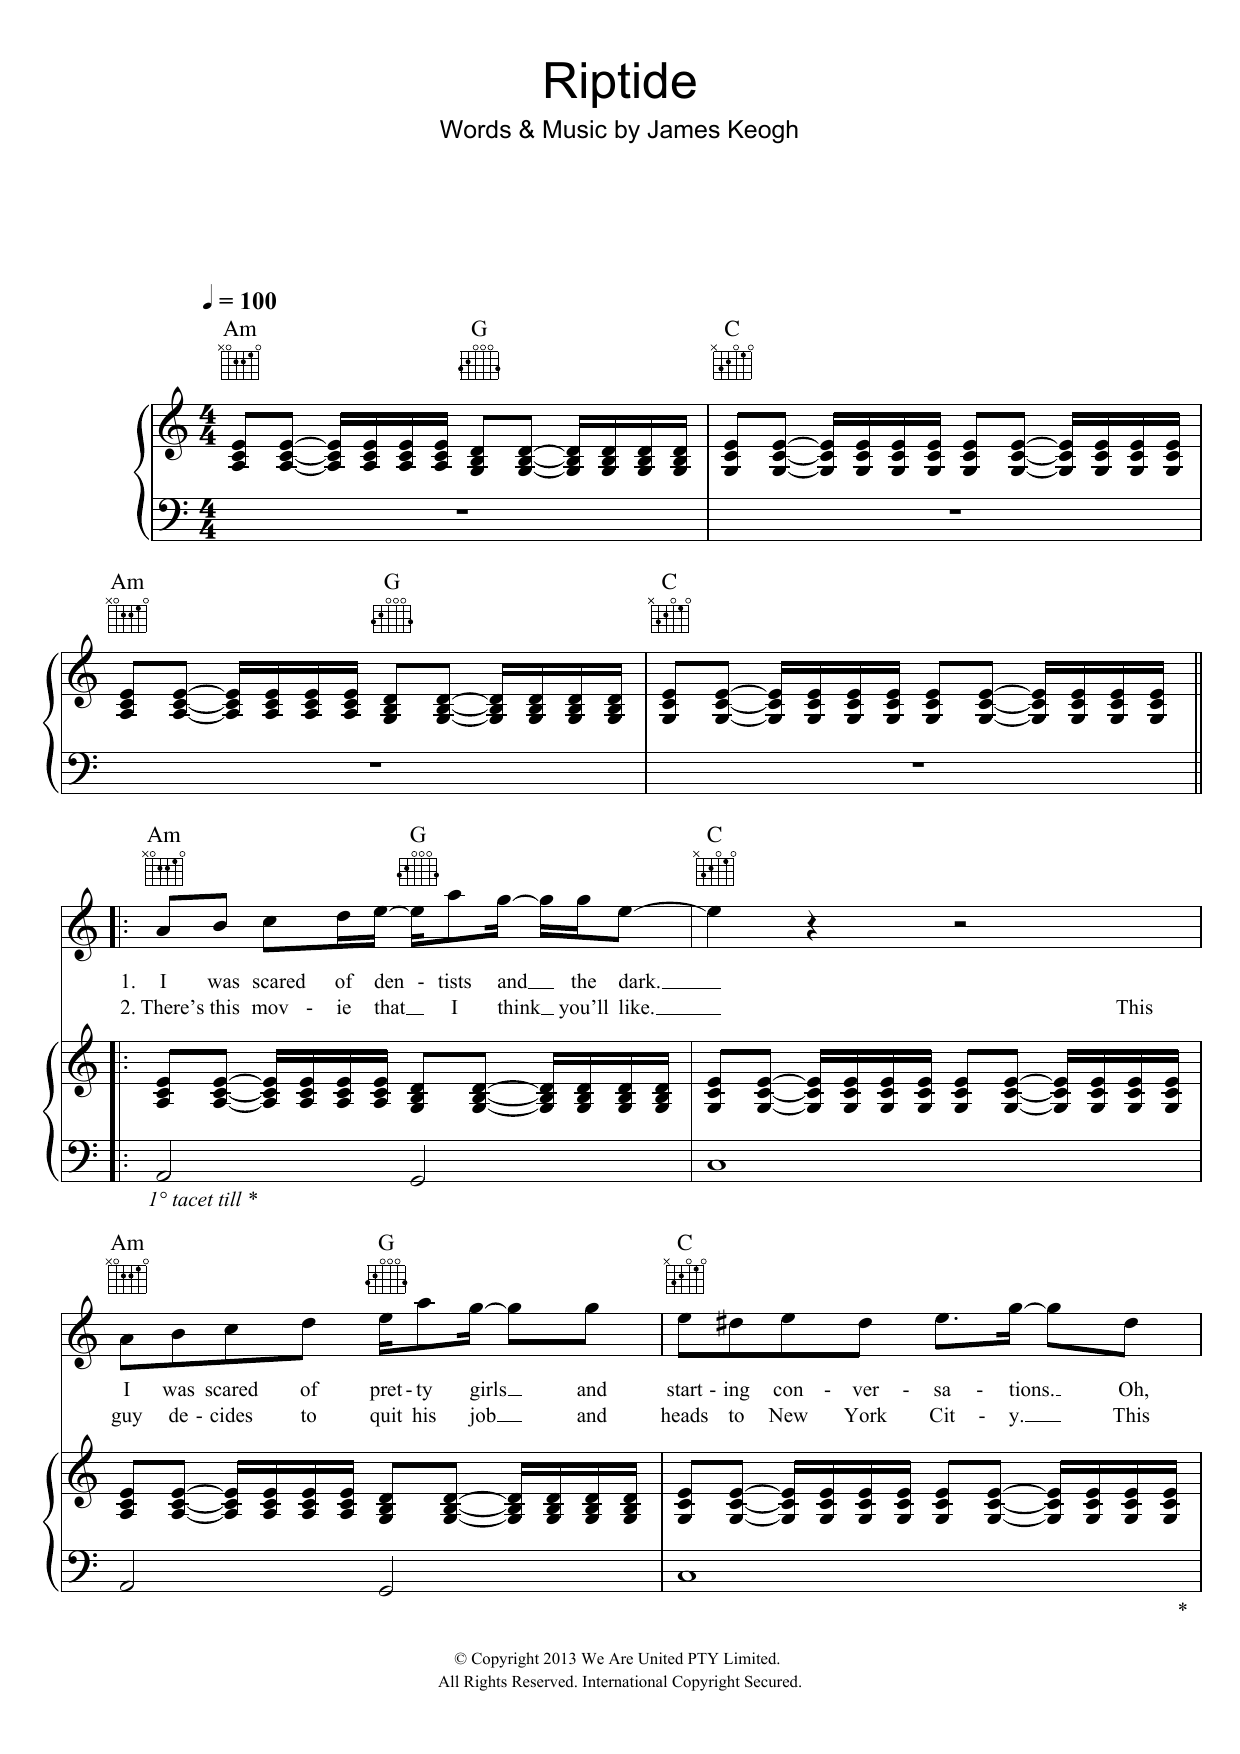 Vance Joy Riptide Sheet Music Notes & Chords for VLNDT - Download or Print PDF